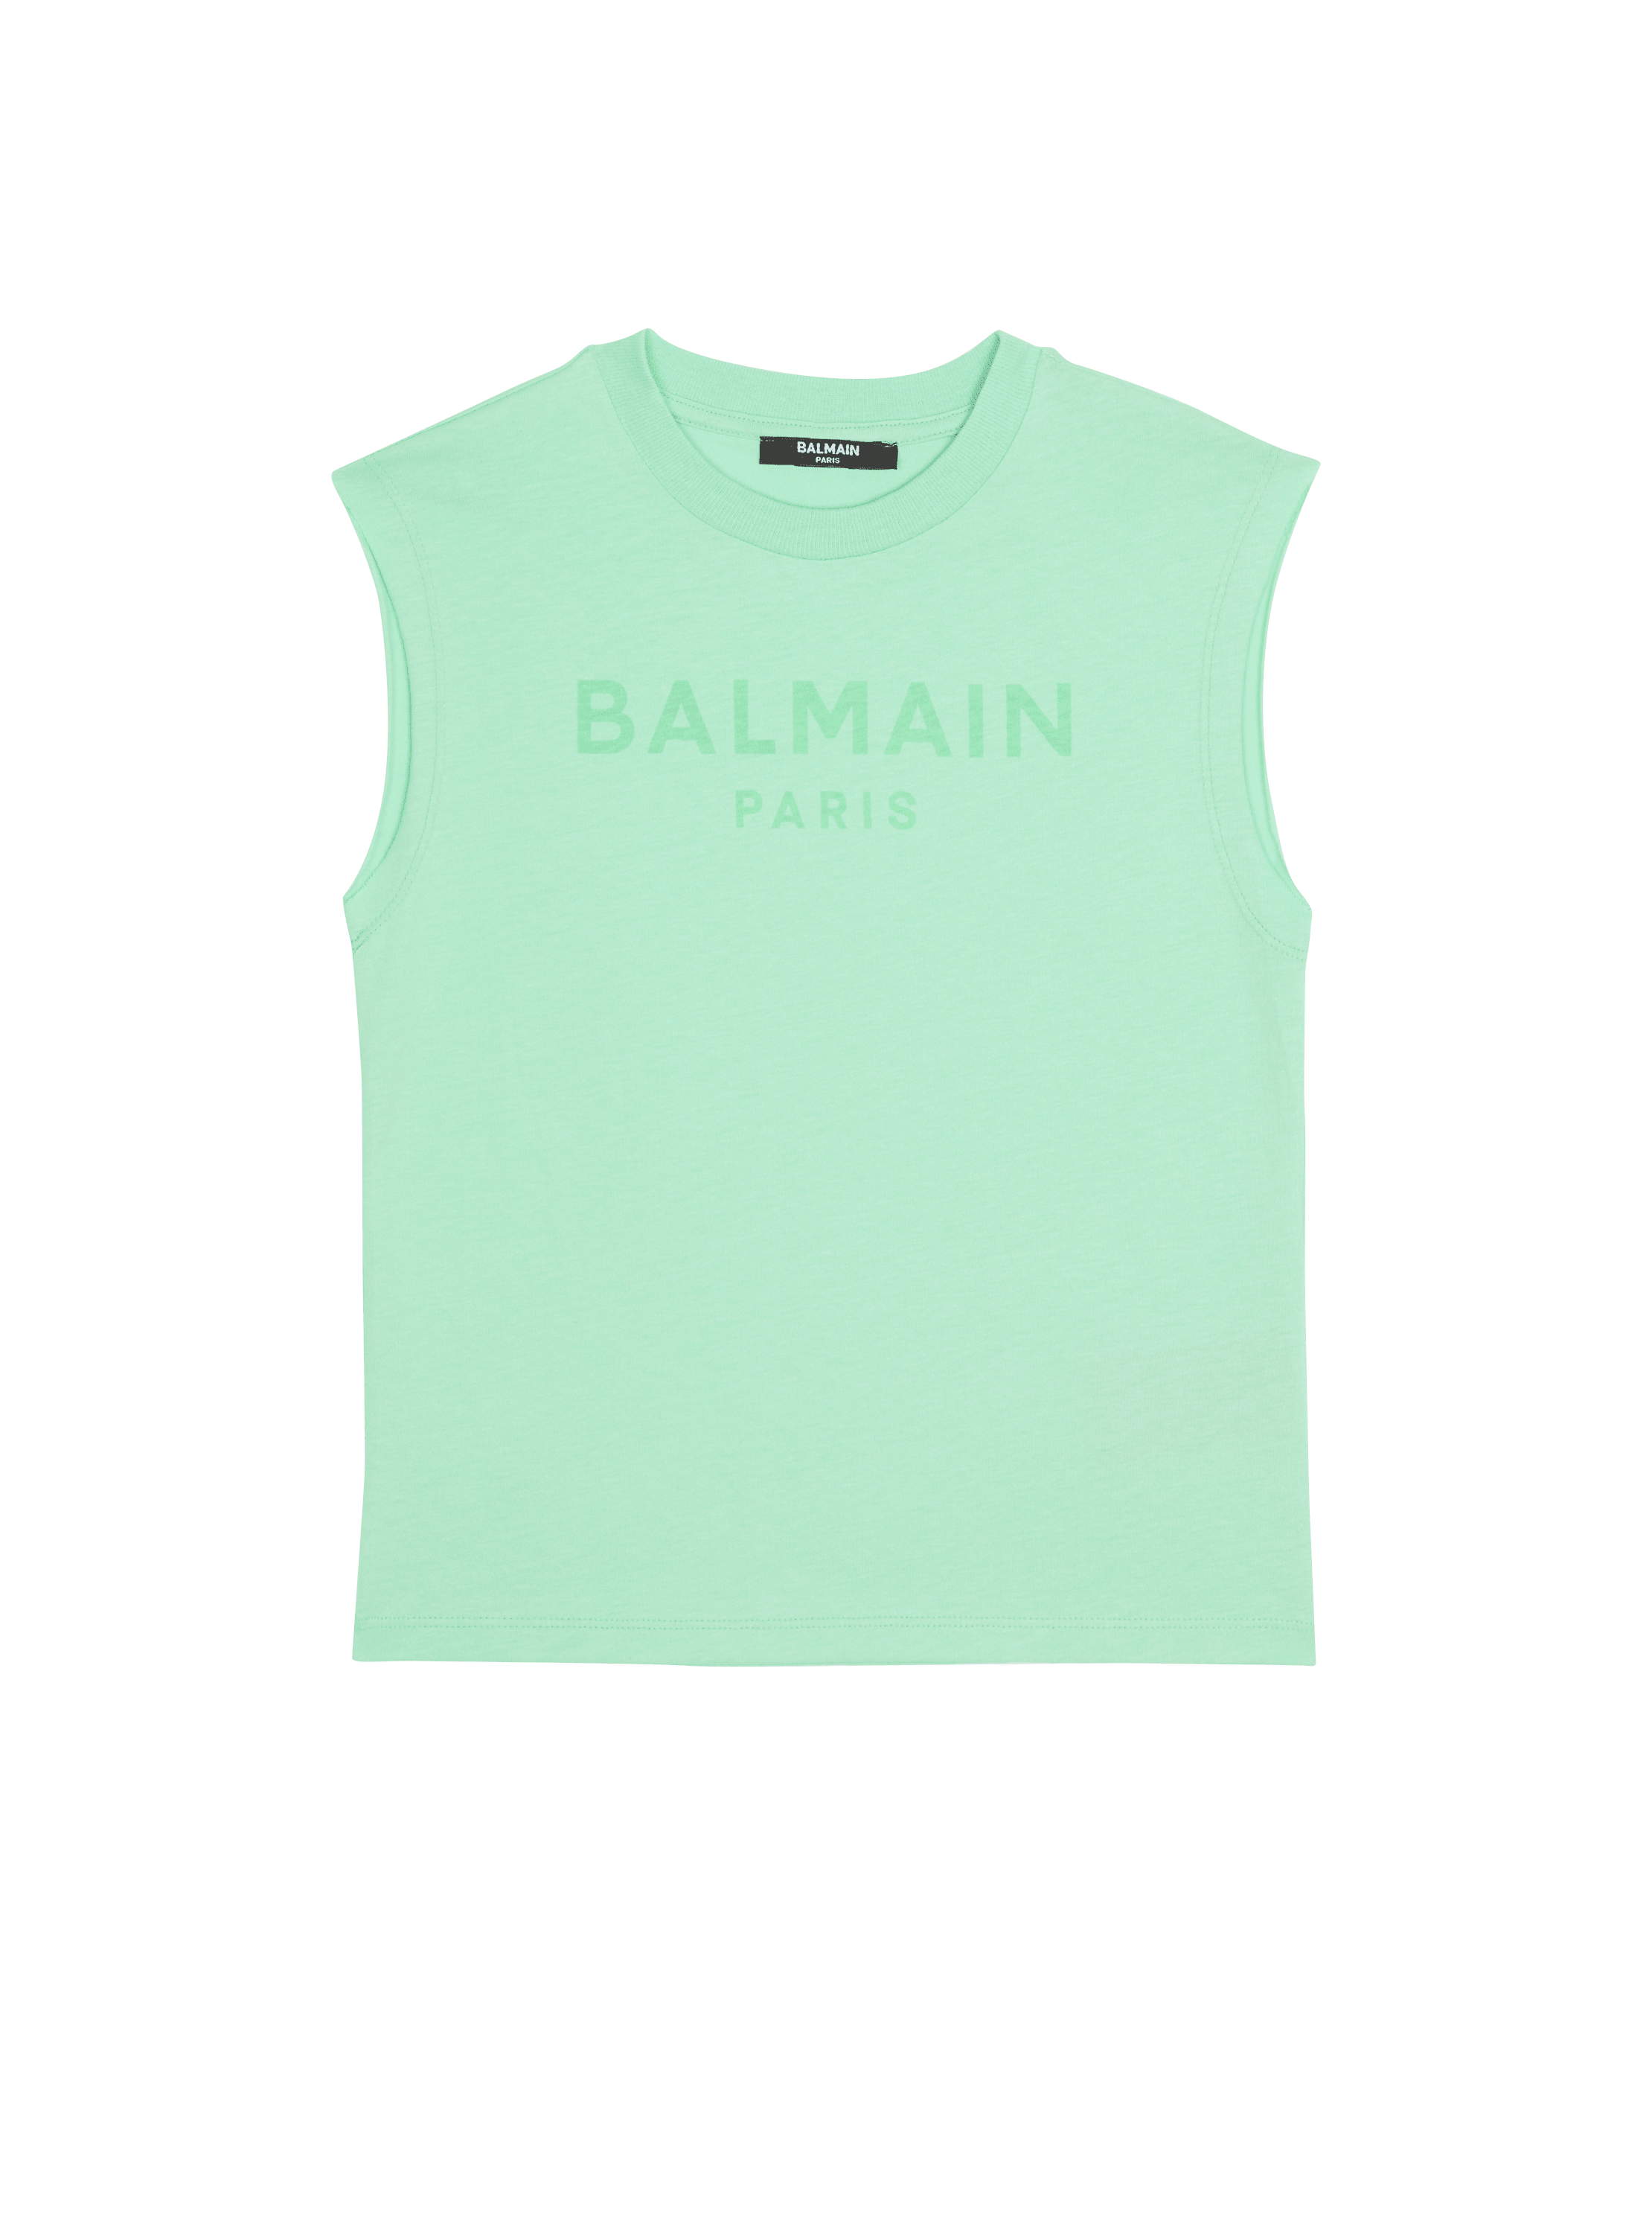 Balmain Paris tank top 